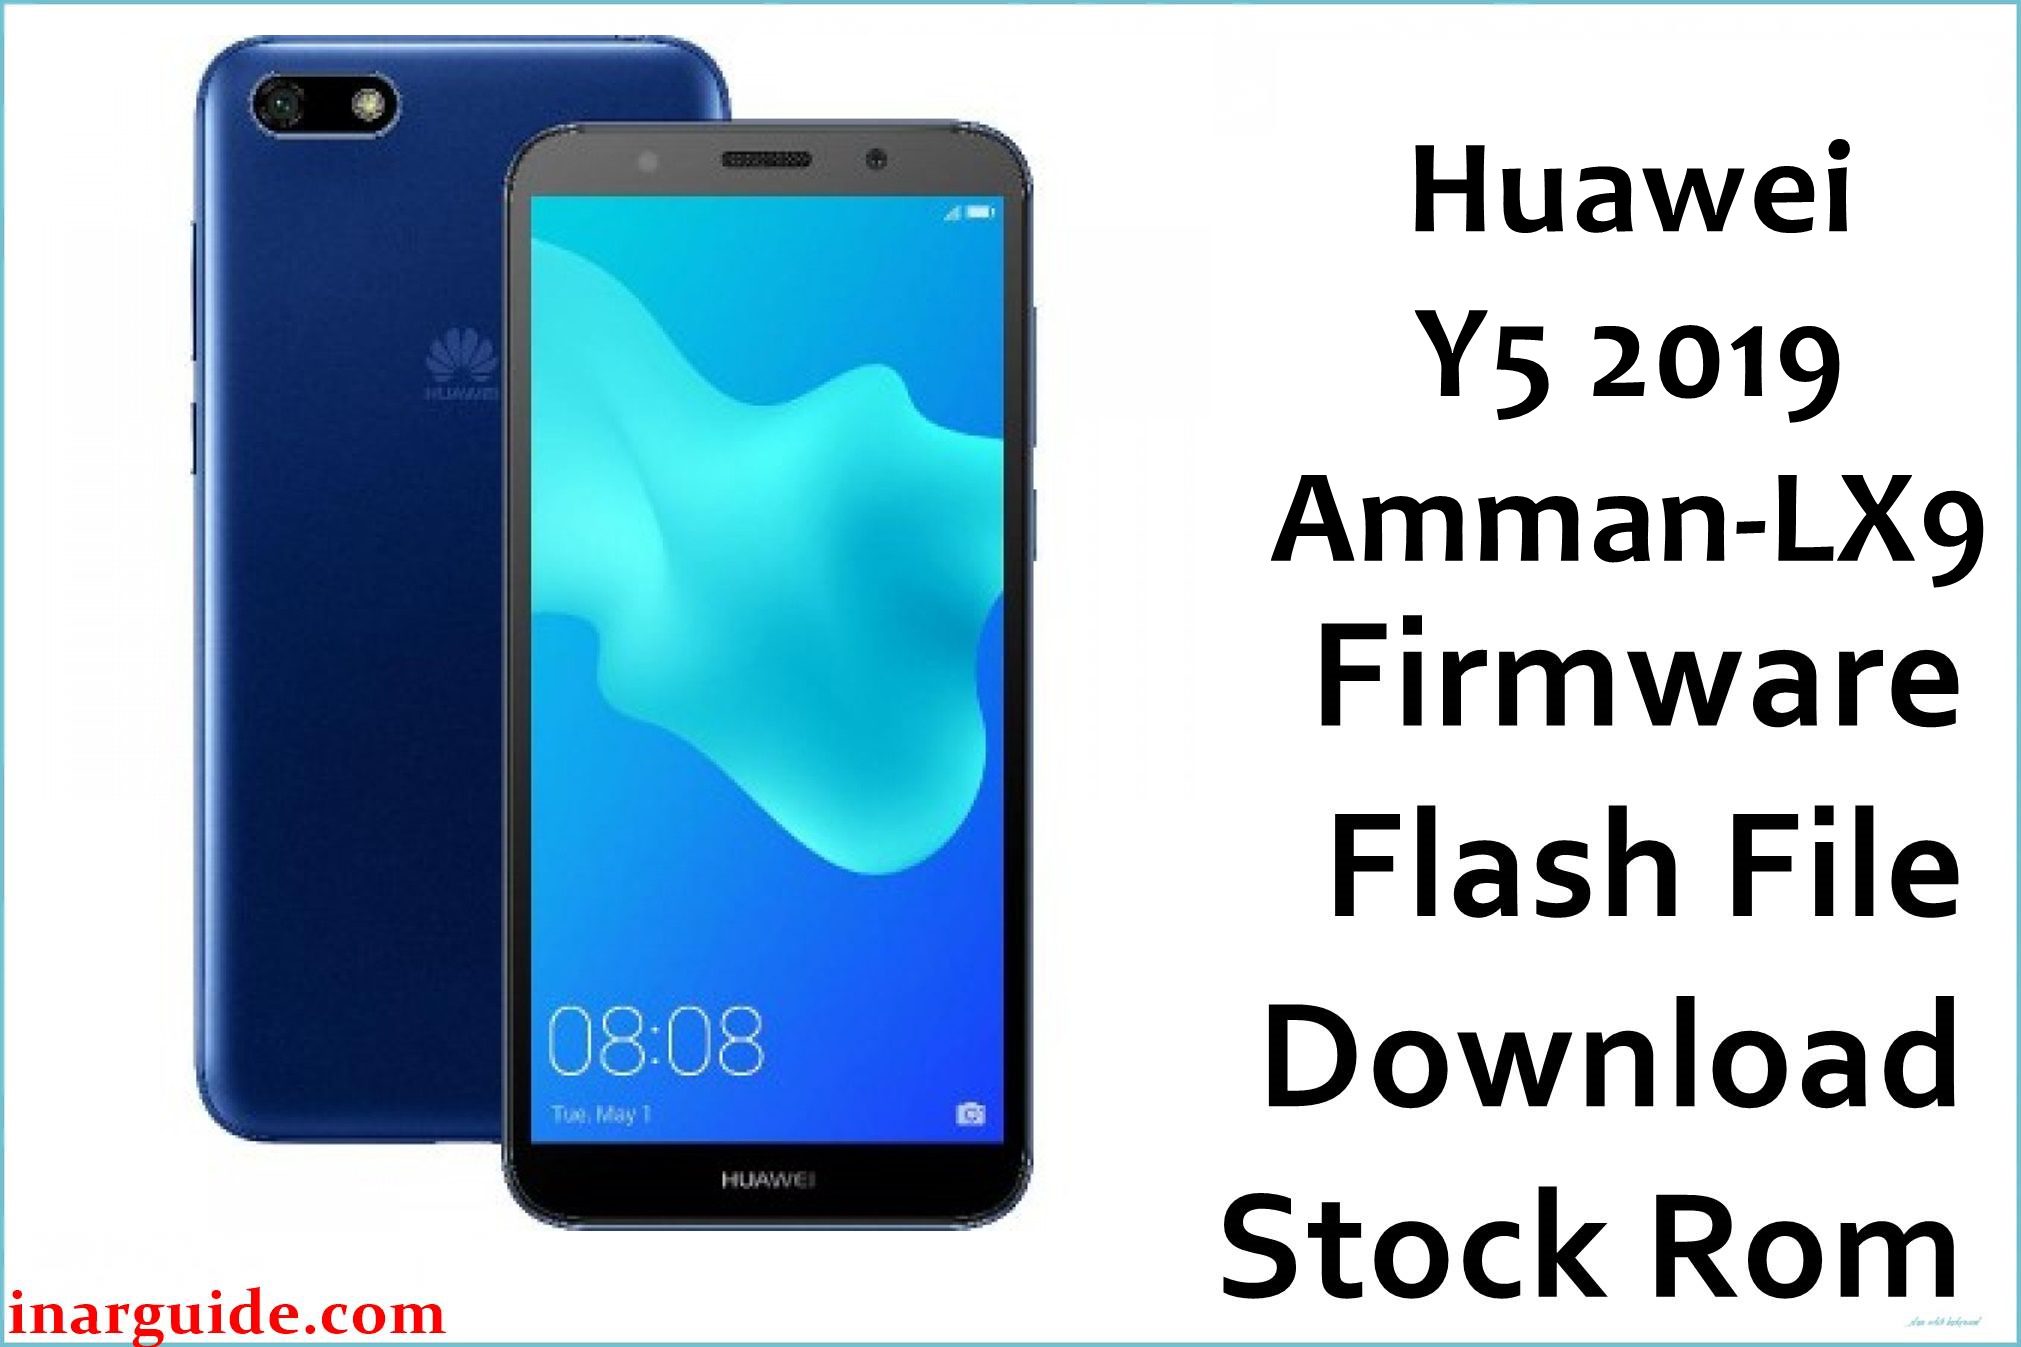 Huawei Y5 2019 Amman LX9